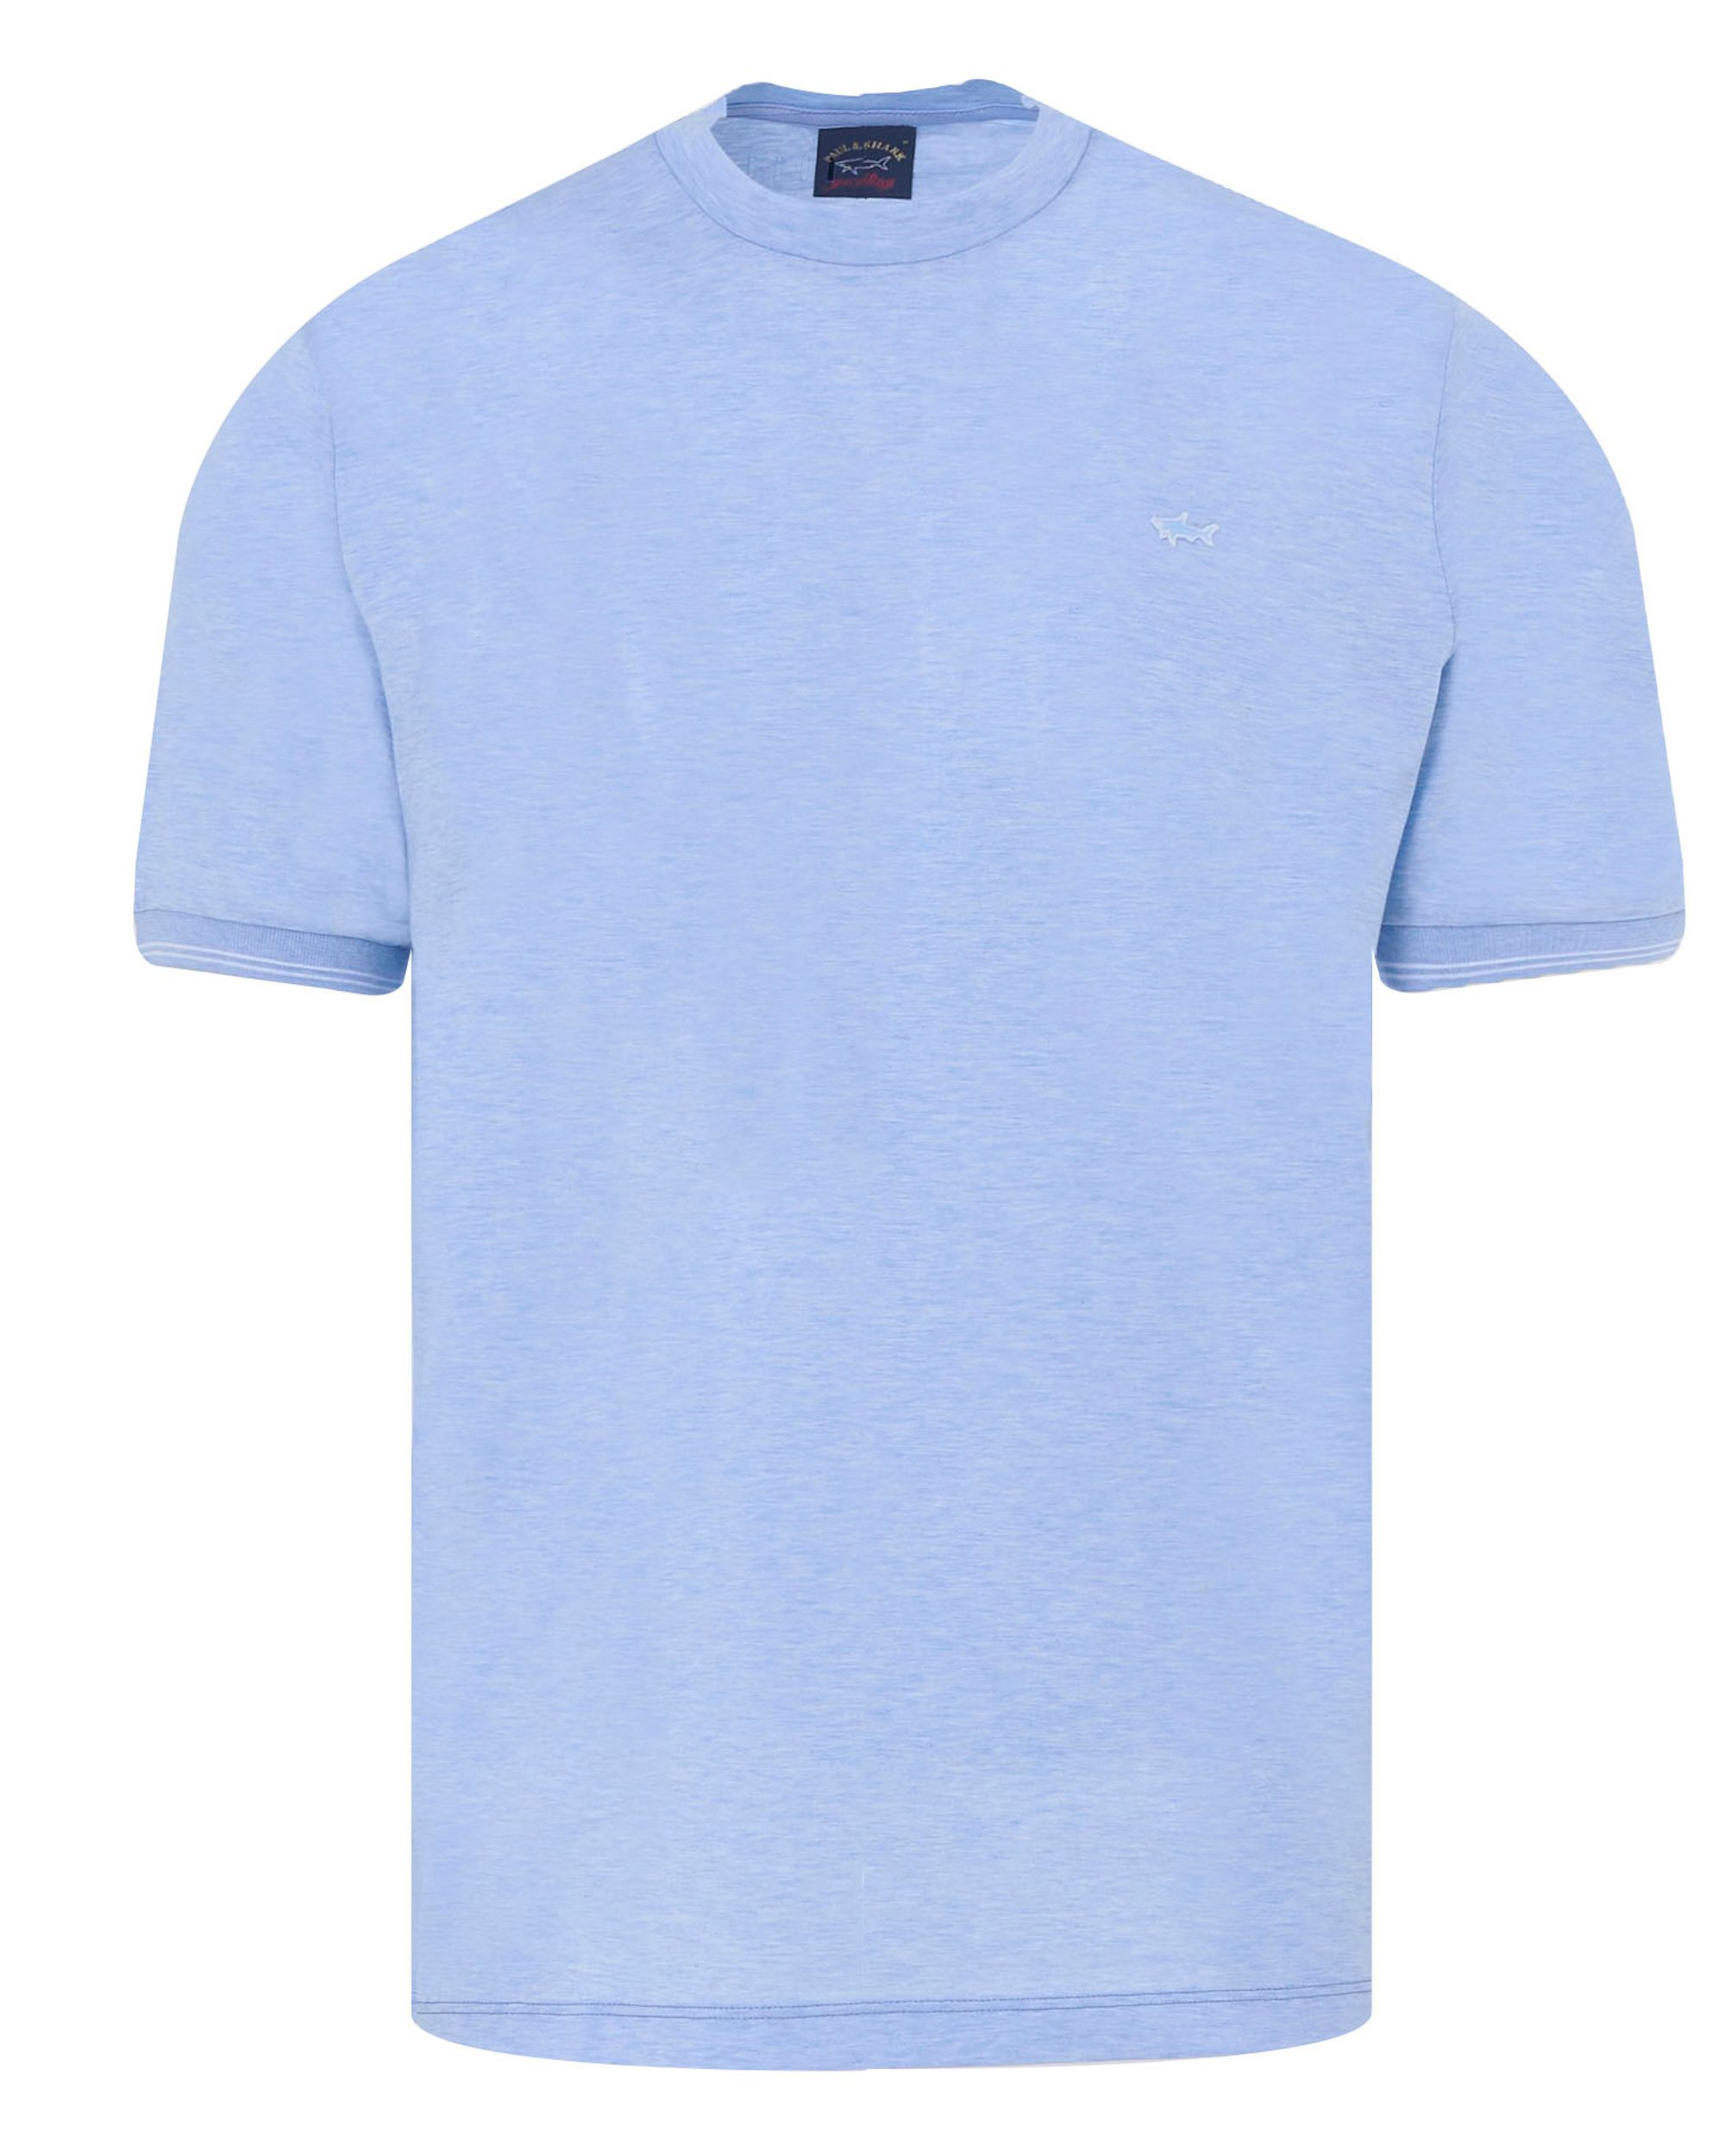 Paul & Shark T-shirt KM Blauw 091150-001-4XL